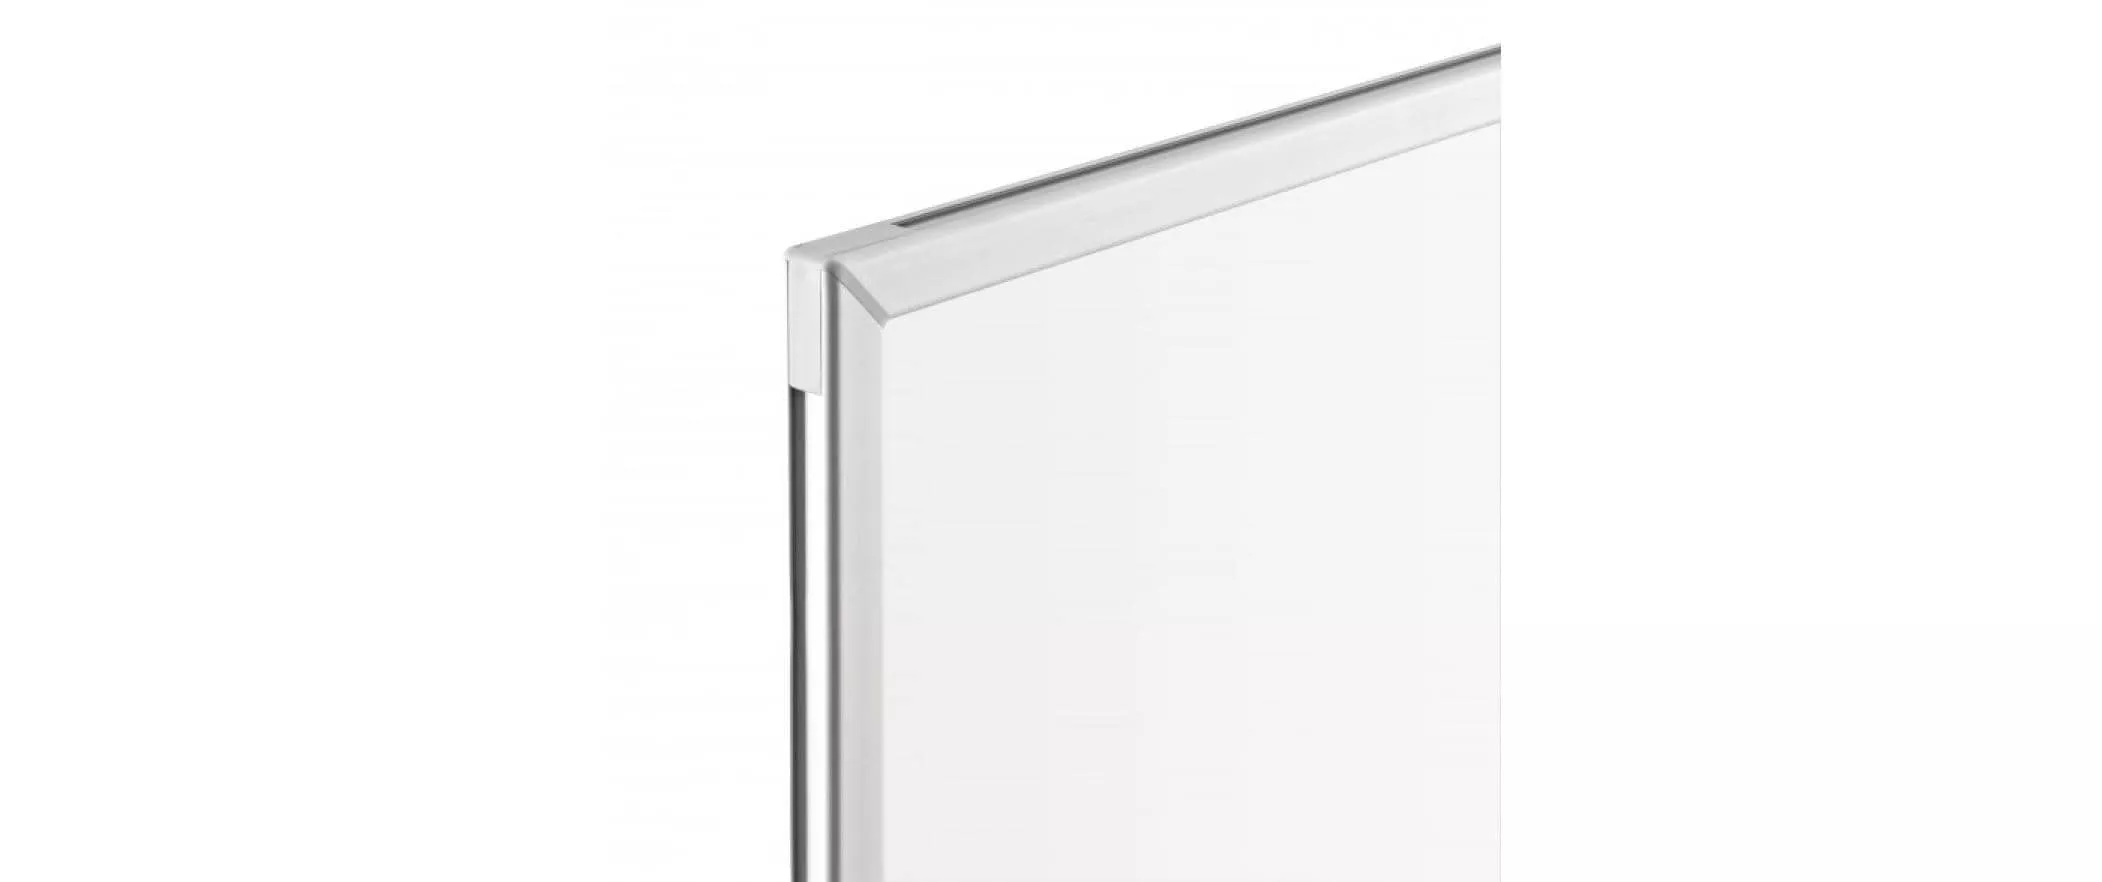 Whiteboard Design CC 120 x 90 cm Weiss, 1 Stück